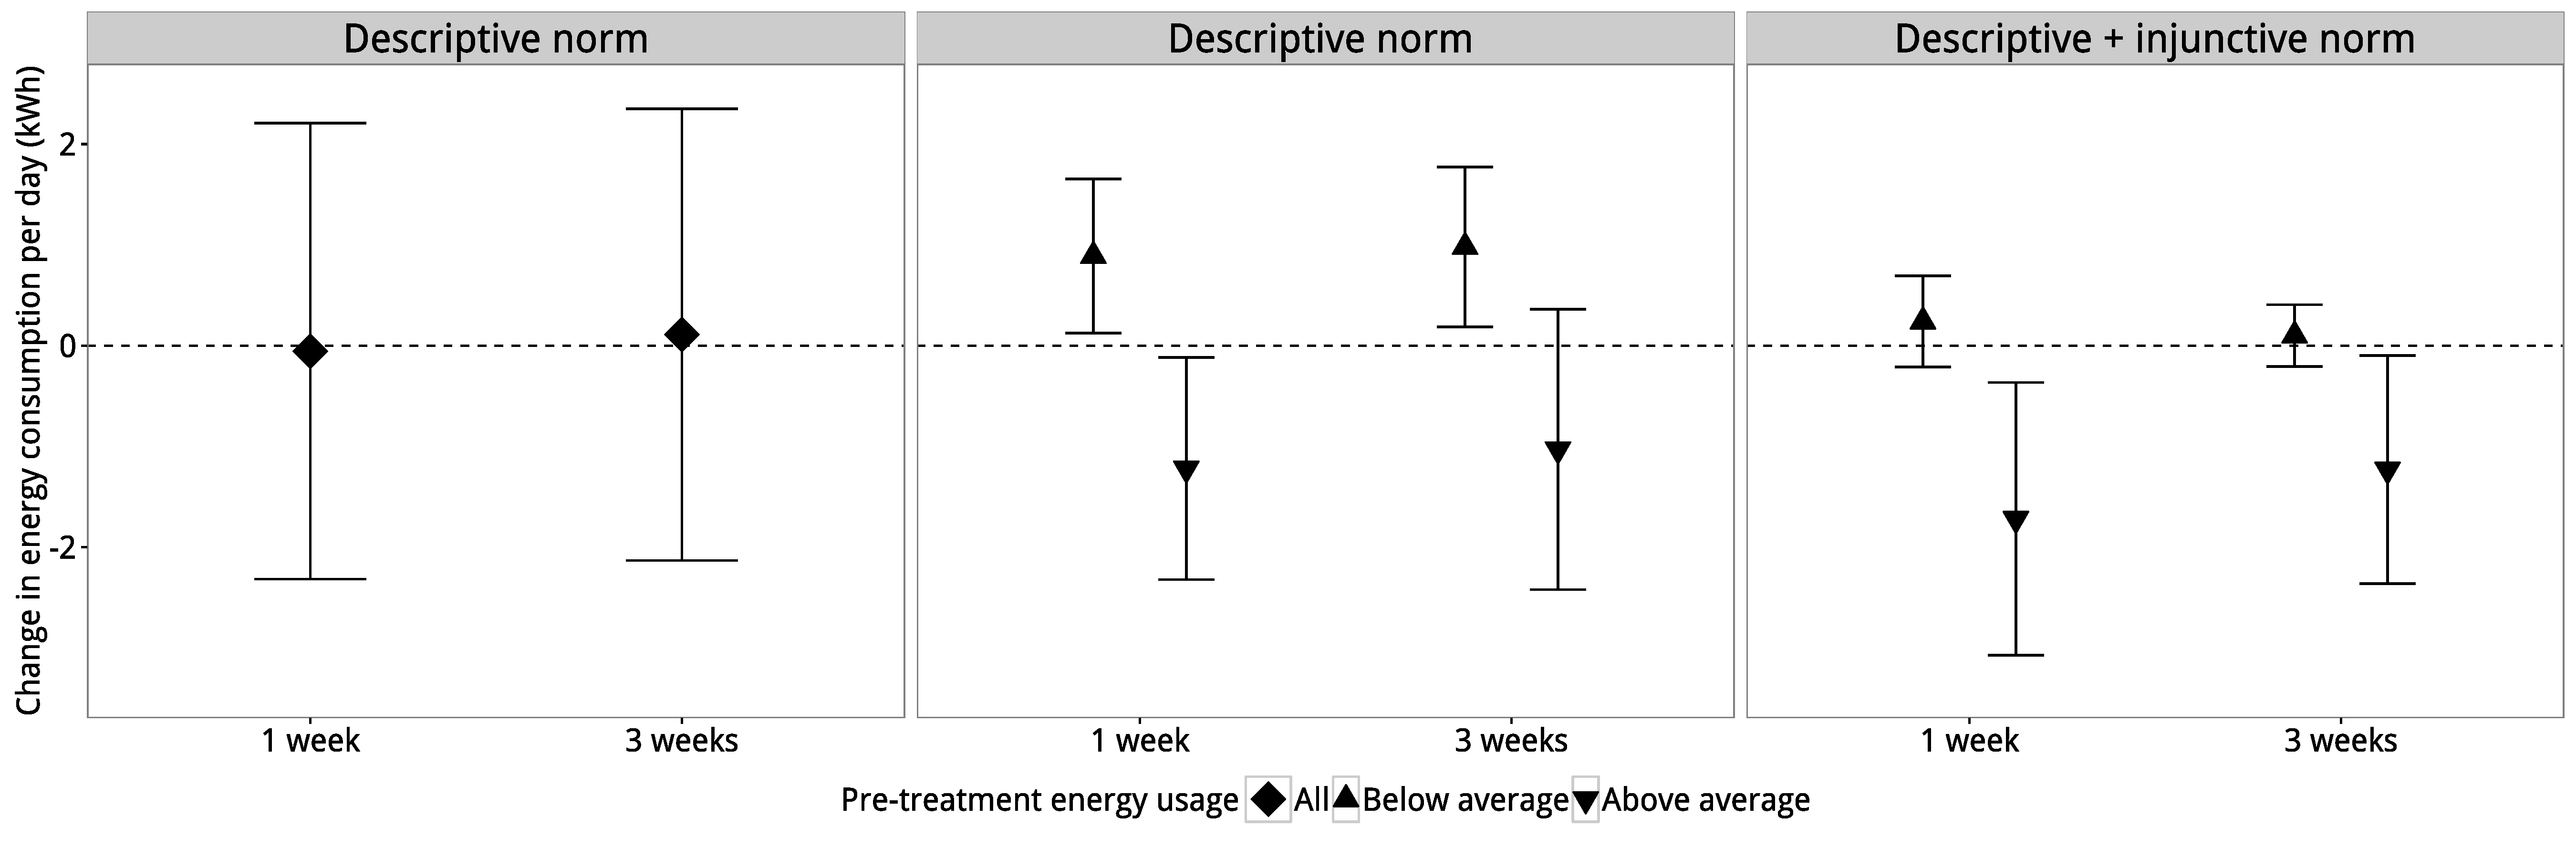 Obrázok 4.4: Výsledky od Schultz a kol. (2007). Panel (a) ukazuje, že popisná normálna úprava má odhadovaný nulový priemerný účinok liečby. Avšak panel (b) ukazuje, že tento priemerný účinok liečby sa skutočne skladá z dvoch kompenzujúcich účinkov. Pre ťažkých používateľov liečba znižovala ich využitie, ale pre ľahkých používateľov liečba zvýšila ich využitie. Nakoniec panel (c) ukazuje, že druhá liečba, ktorá používala popisné a príkazové normy, mala zhruba rovnaký účinok na ťažkých používateľov, ale zmiernil bumerangový efekt na ľahkých používateľov. Adaptované od Schultz a kol. (2007).